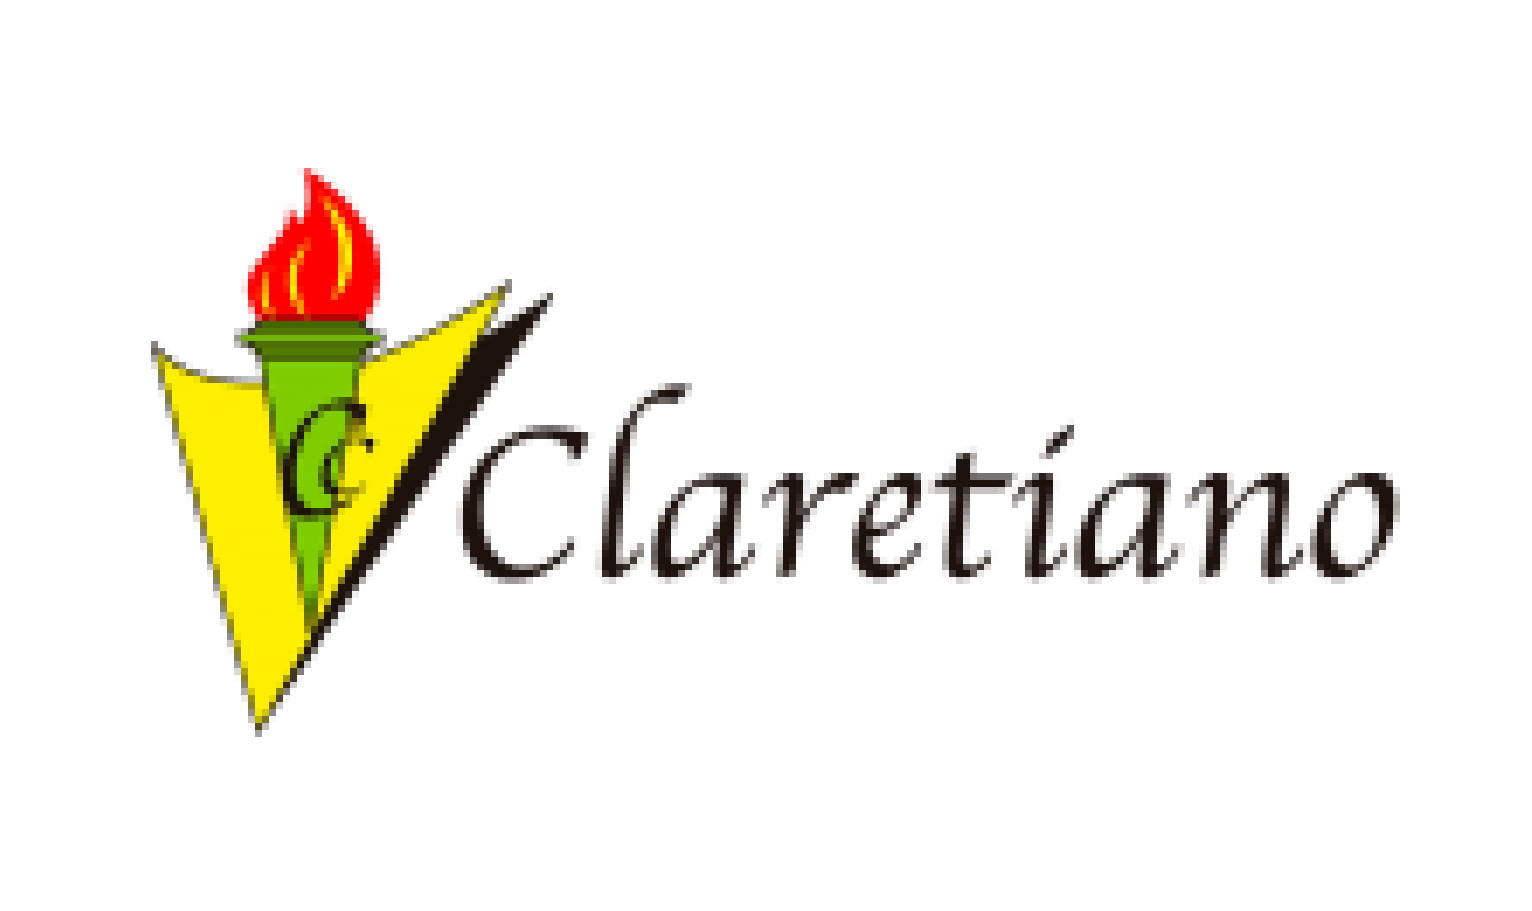 Claretiano